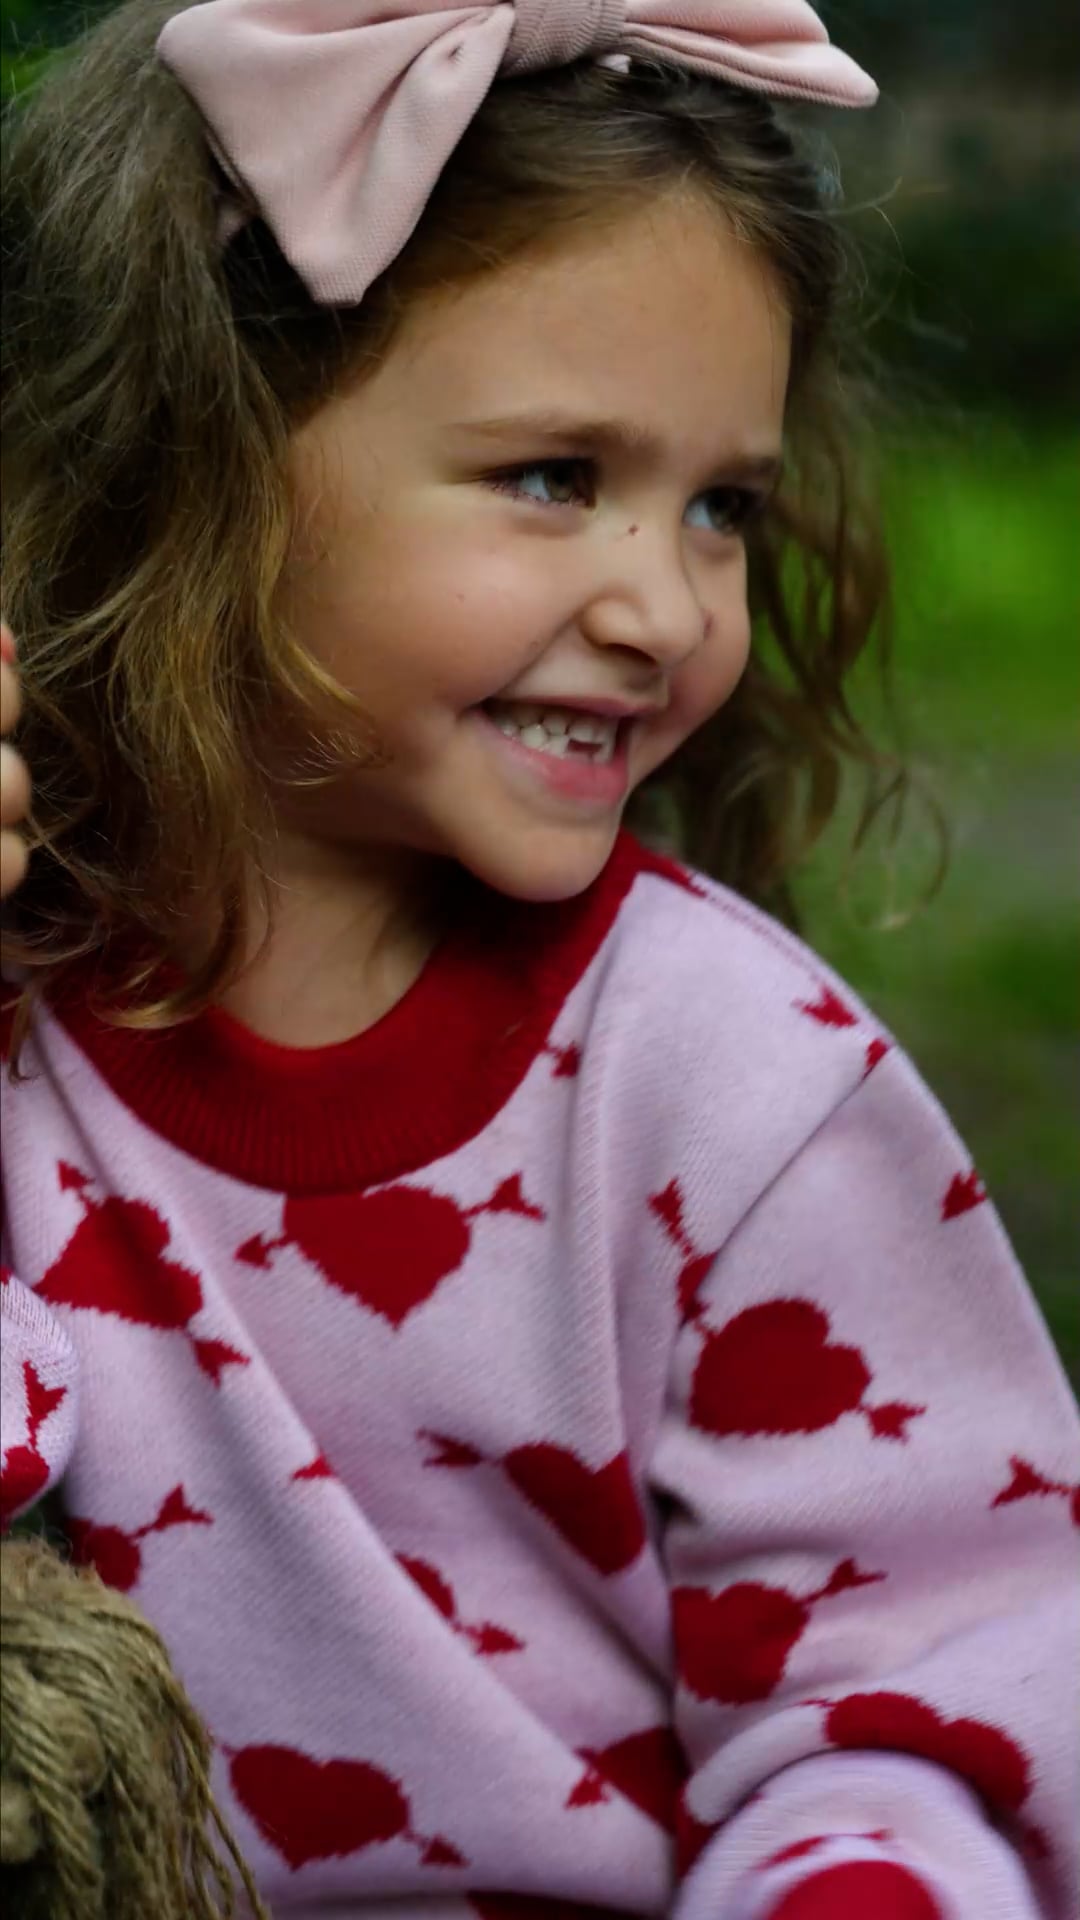 Vaikiškas megztinis KID STORY Merino sweet heart